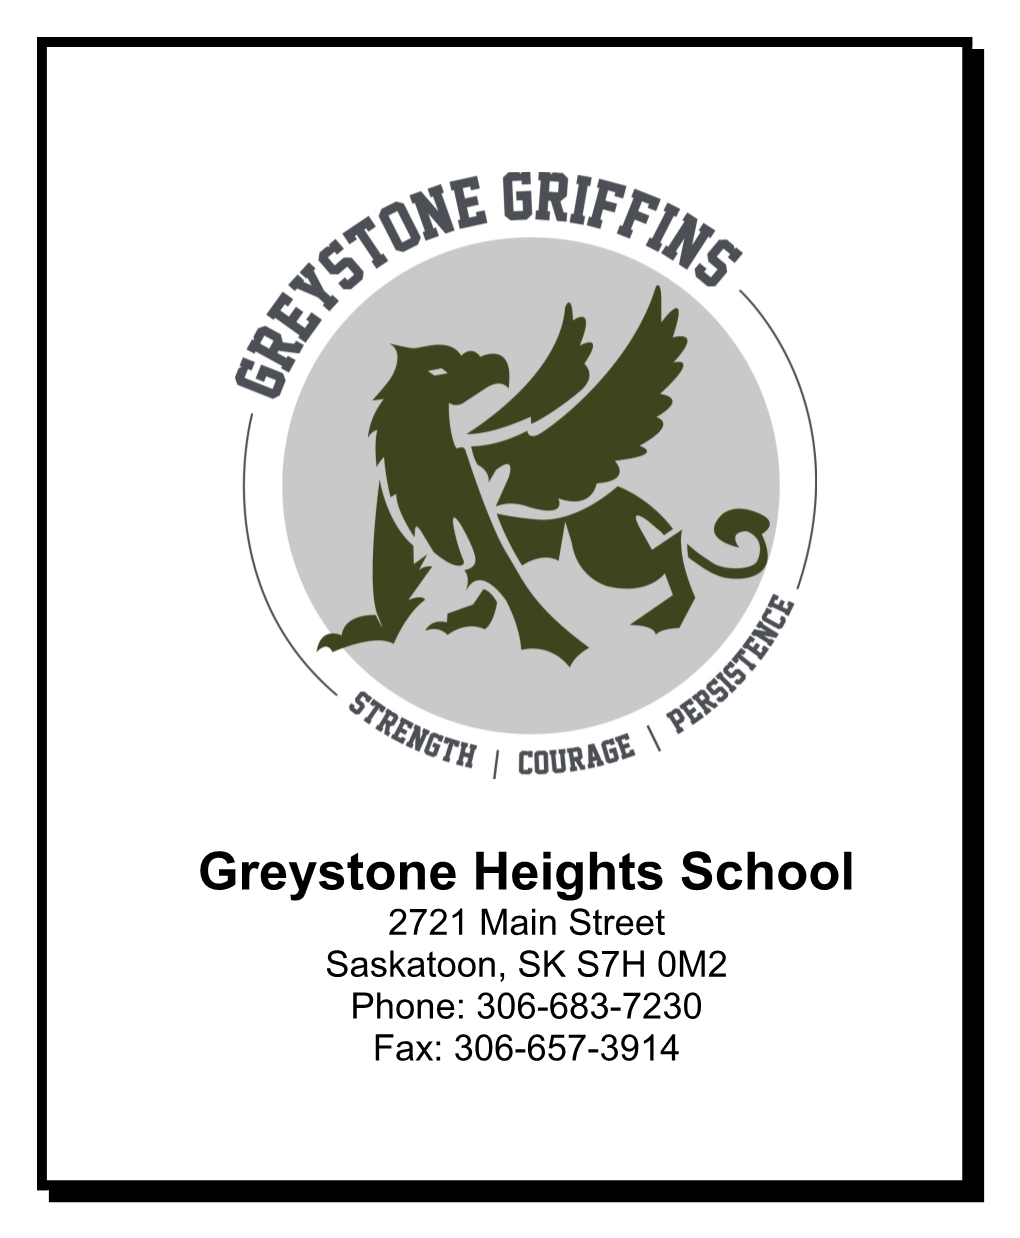 Greystone Heights School